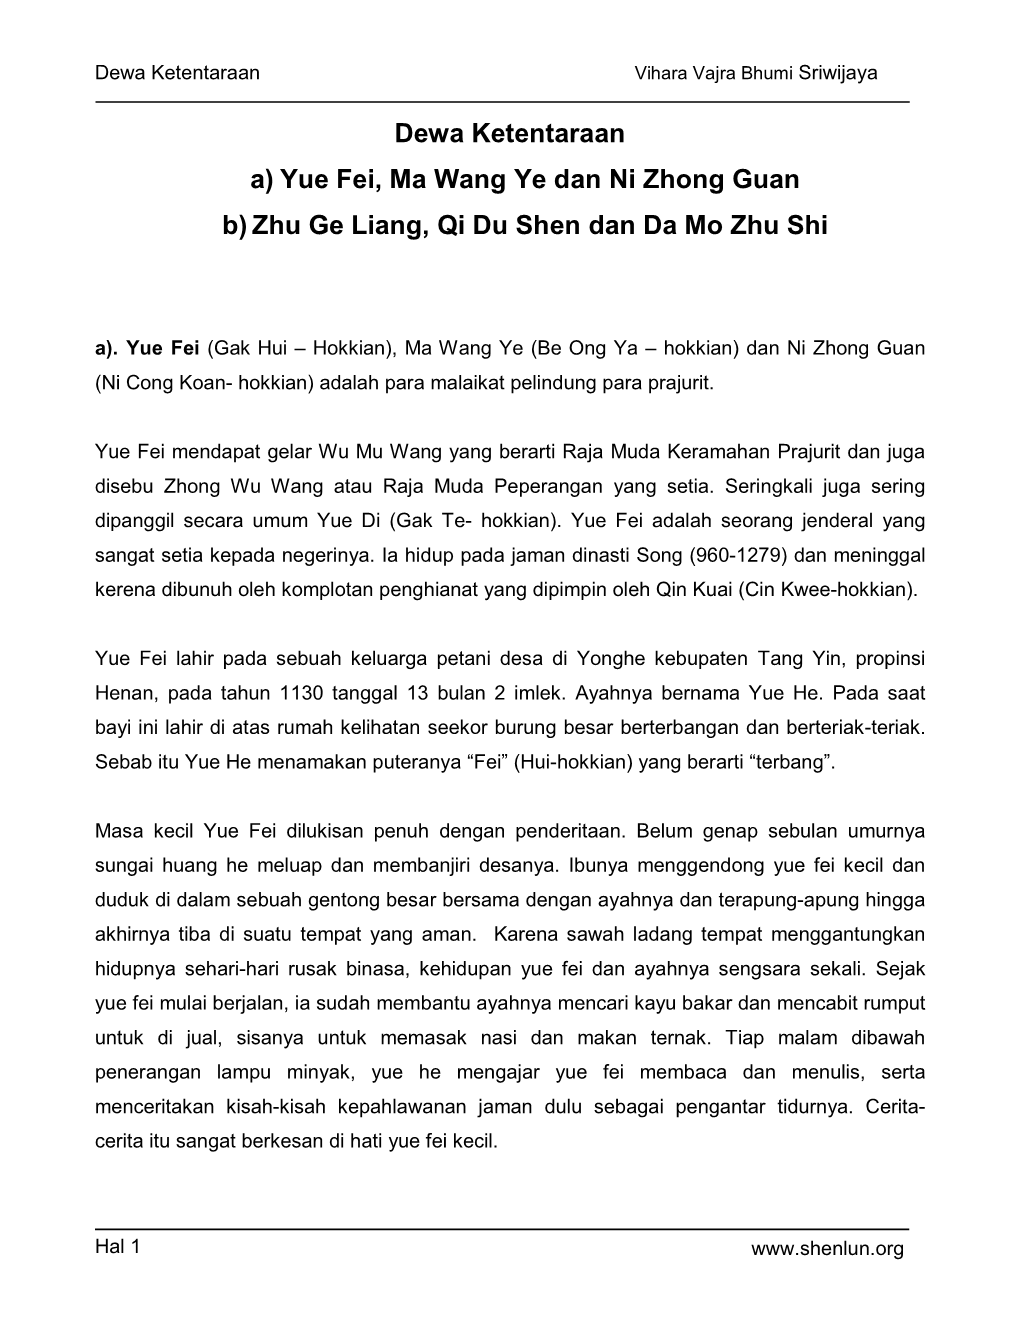 Dewa Ketentaraan A) Yue Fei, Ma Wang Ye Dan Ni Zhong Guan B) Zhu Ge Liang, Qi Du Shen Dan Da Mo Zhu Shi